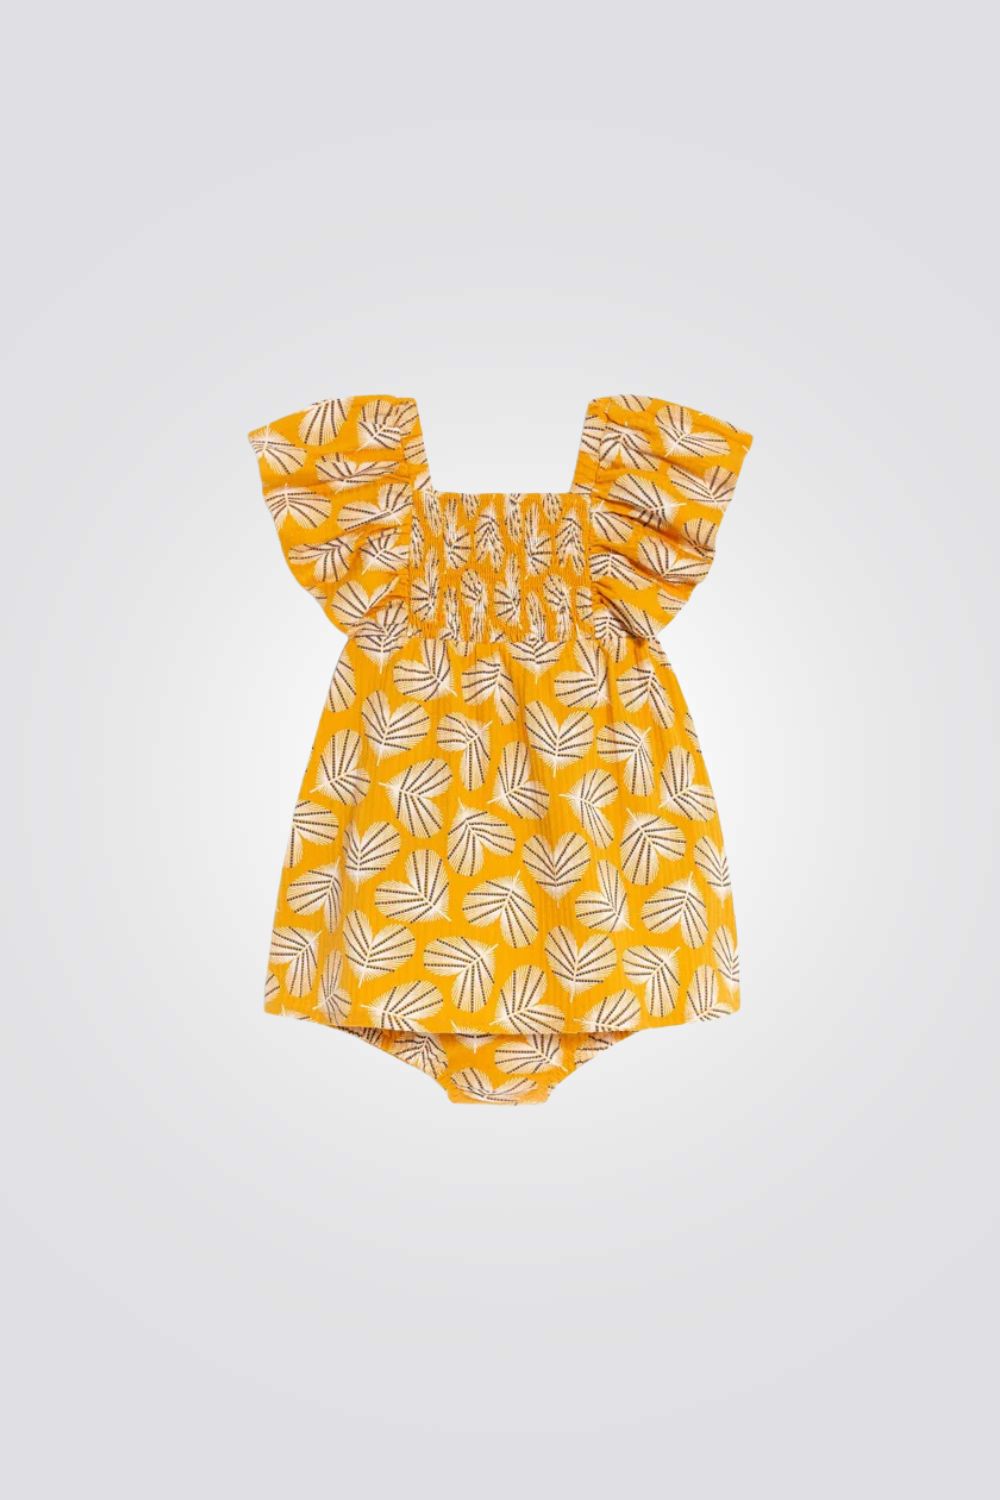 שמלה לתינוקות בצבע צהוב עם הדפס עלים